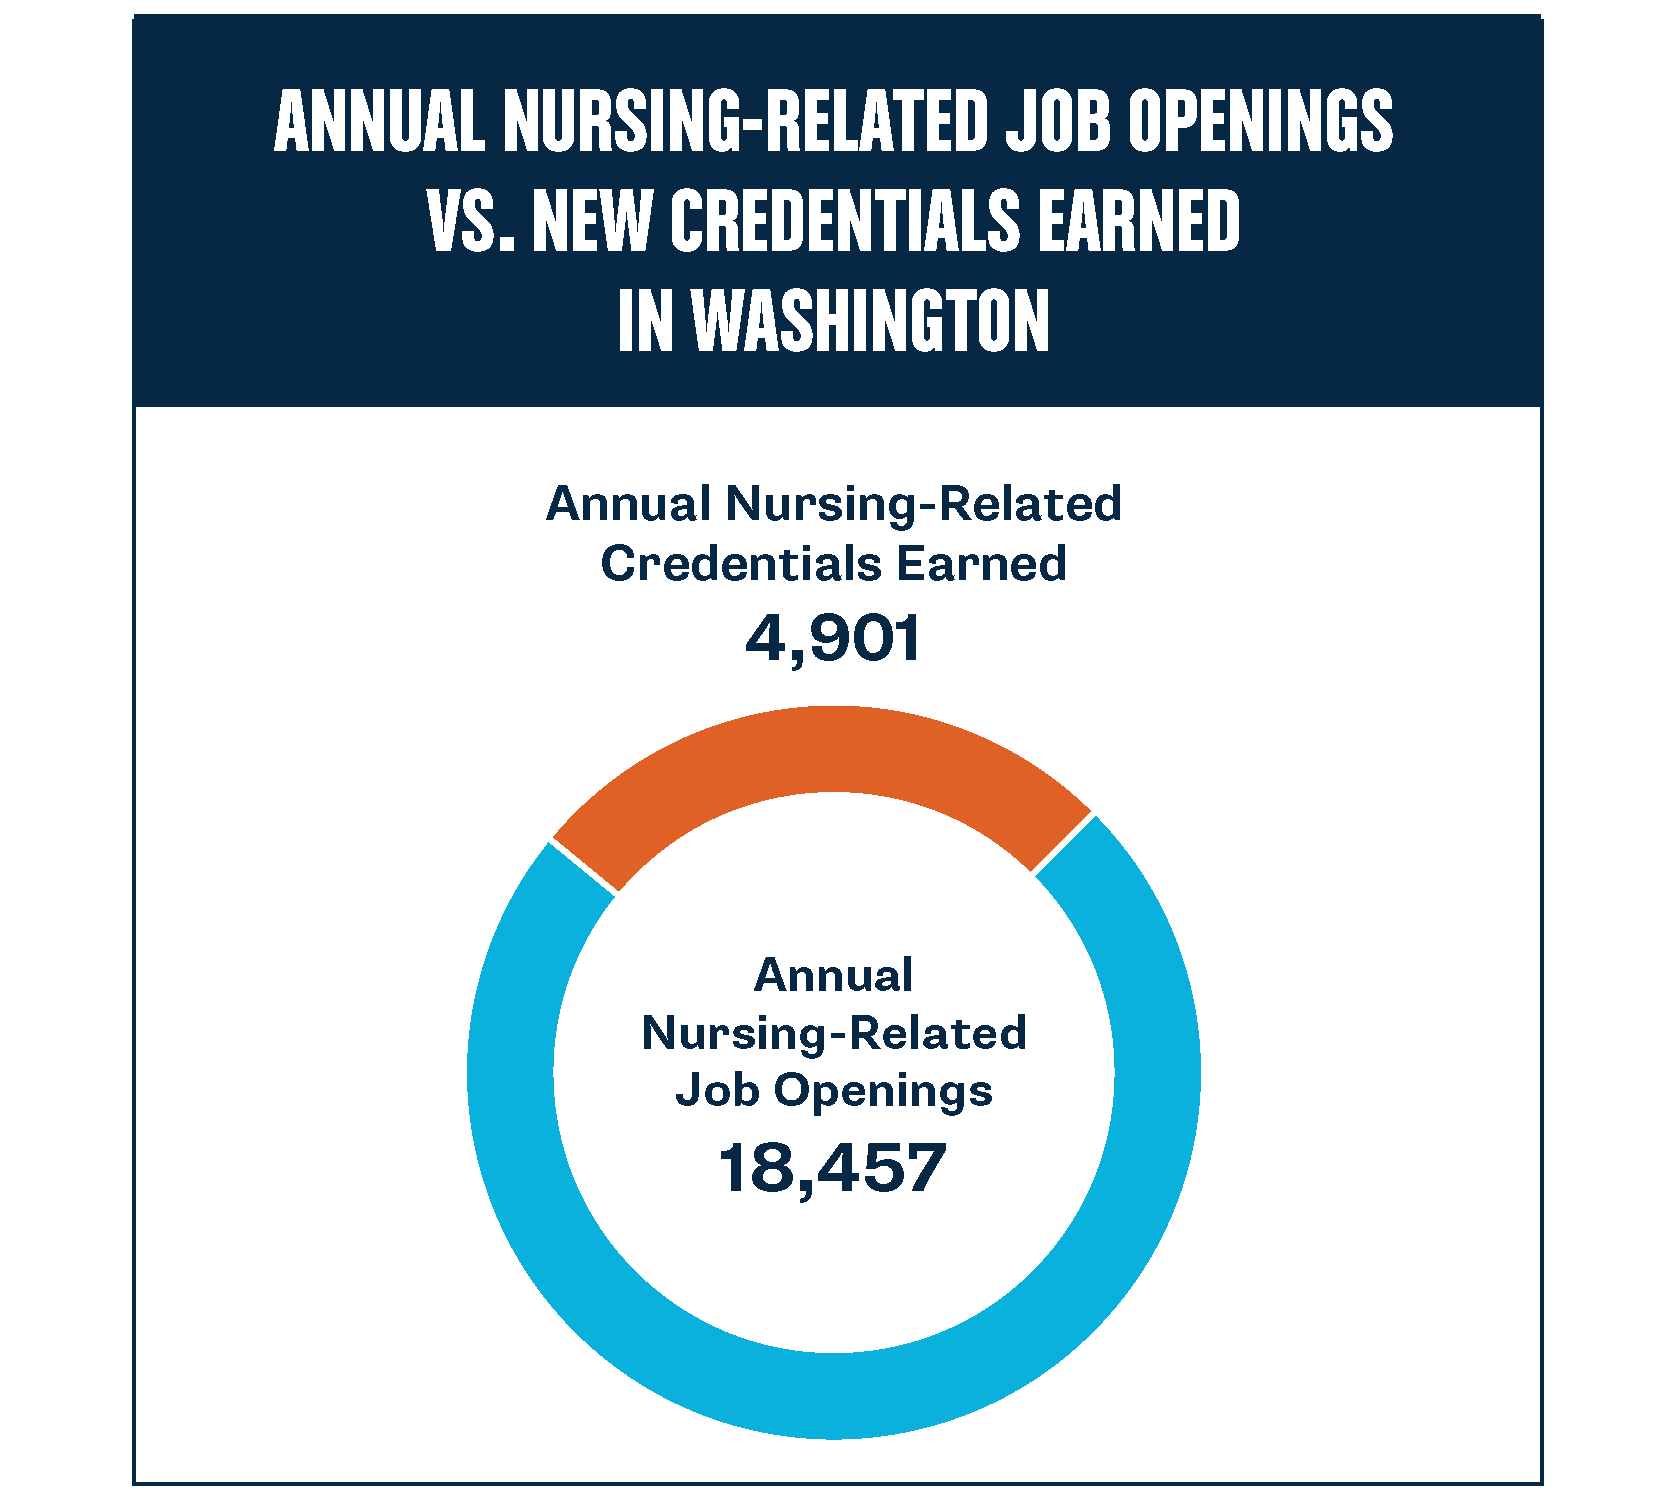 વોશિંગ્ટનમાં નર્સિંગ-સંબંધિત નોકરીઓ માટે ઓળખપત્રના તફાવતનો ગ્રાફ